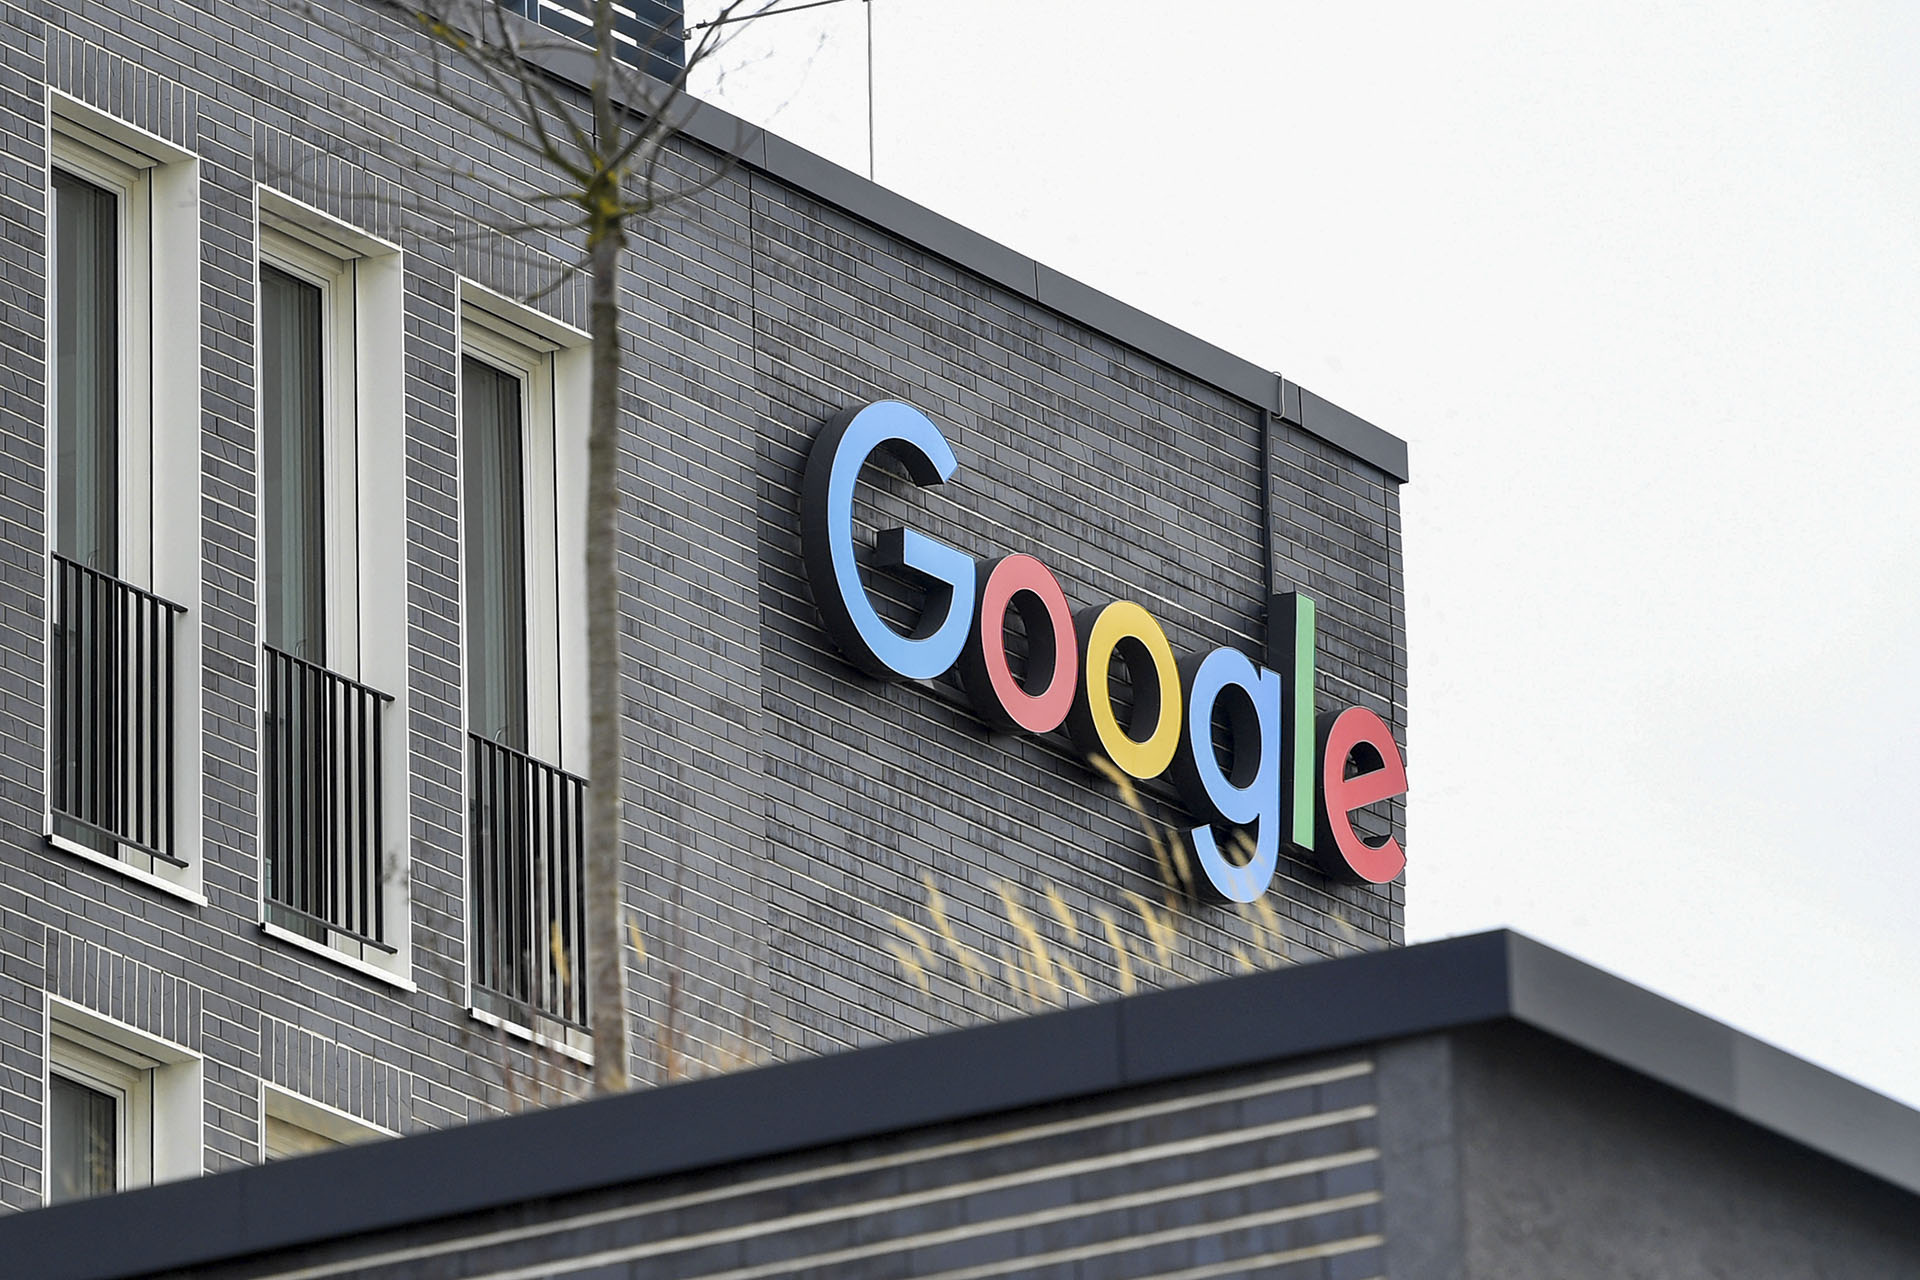 Pert indított a Google a rájuk kiszabott 4,3 milliárd eurós rekordbírság miatt